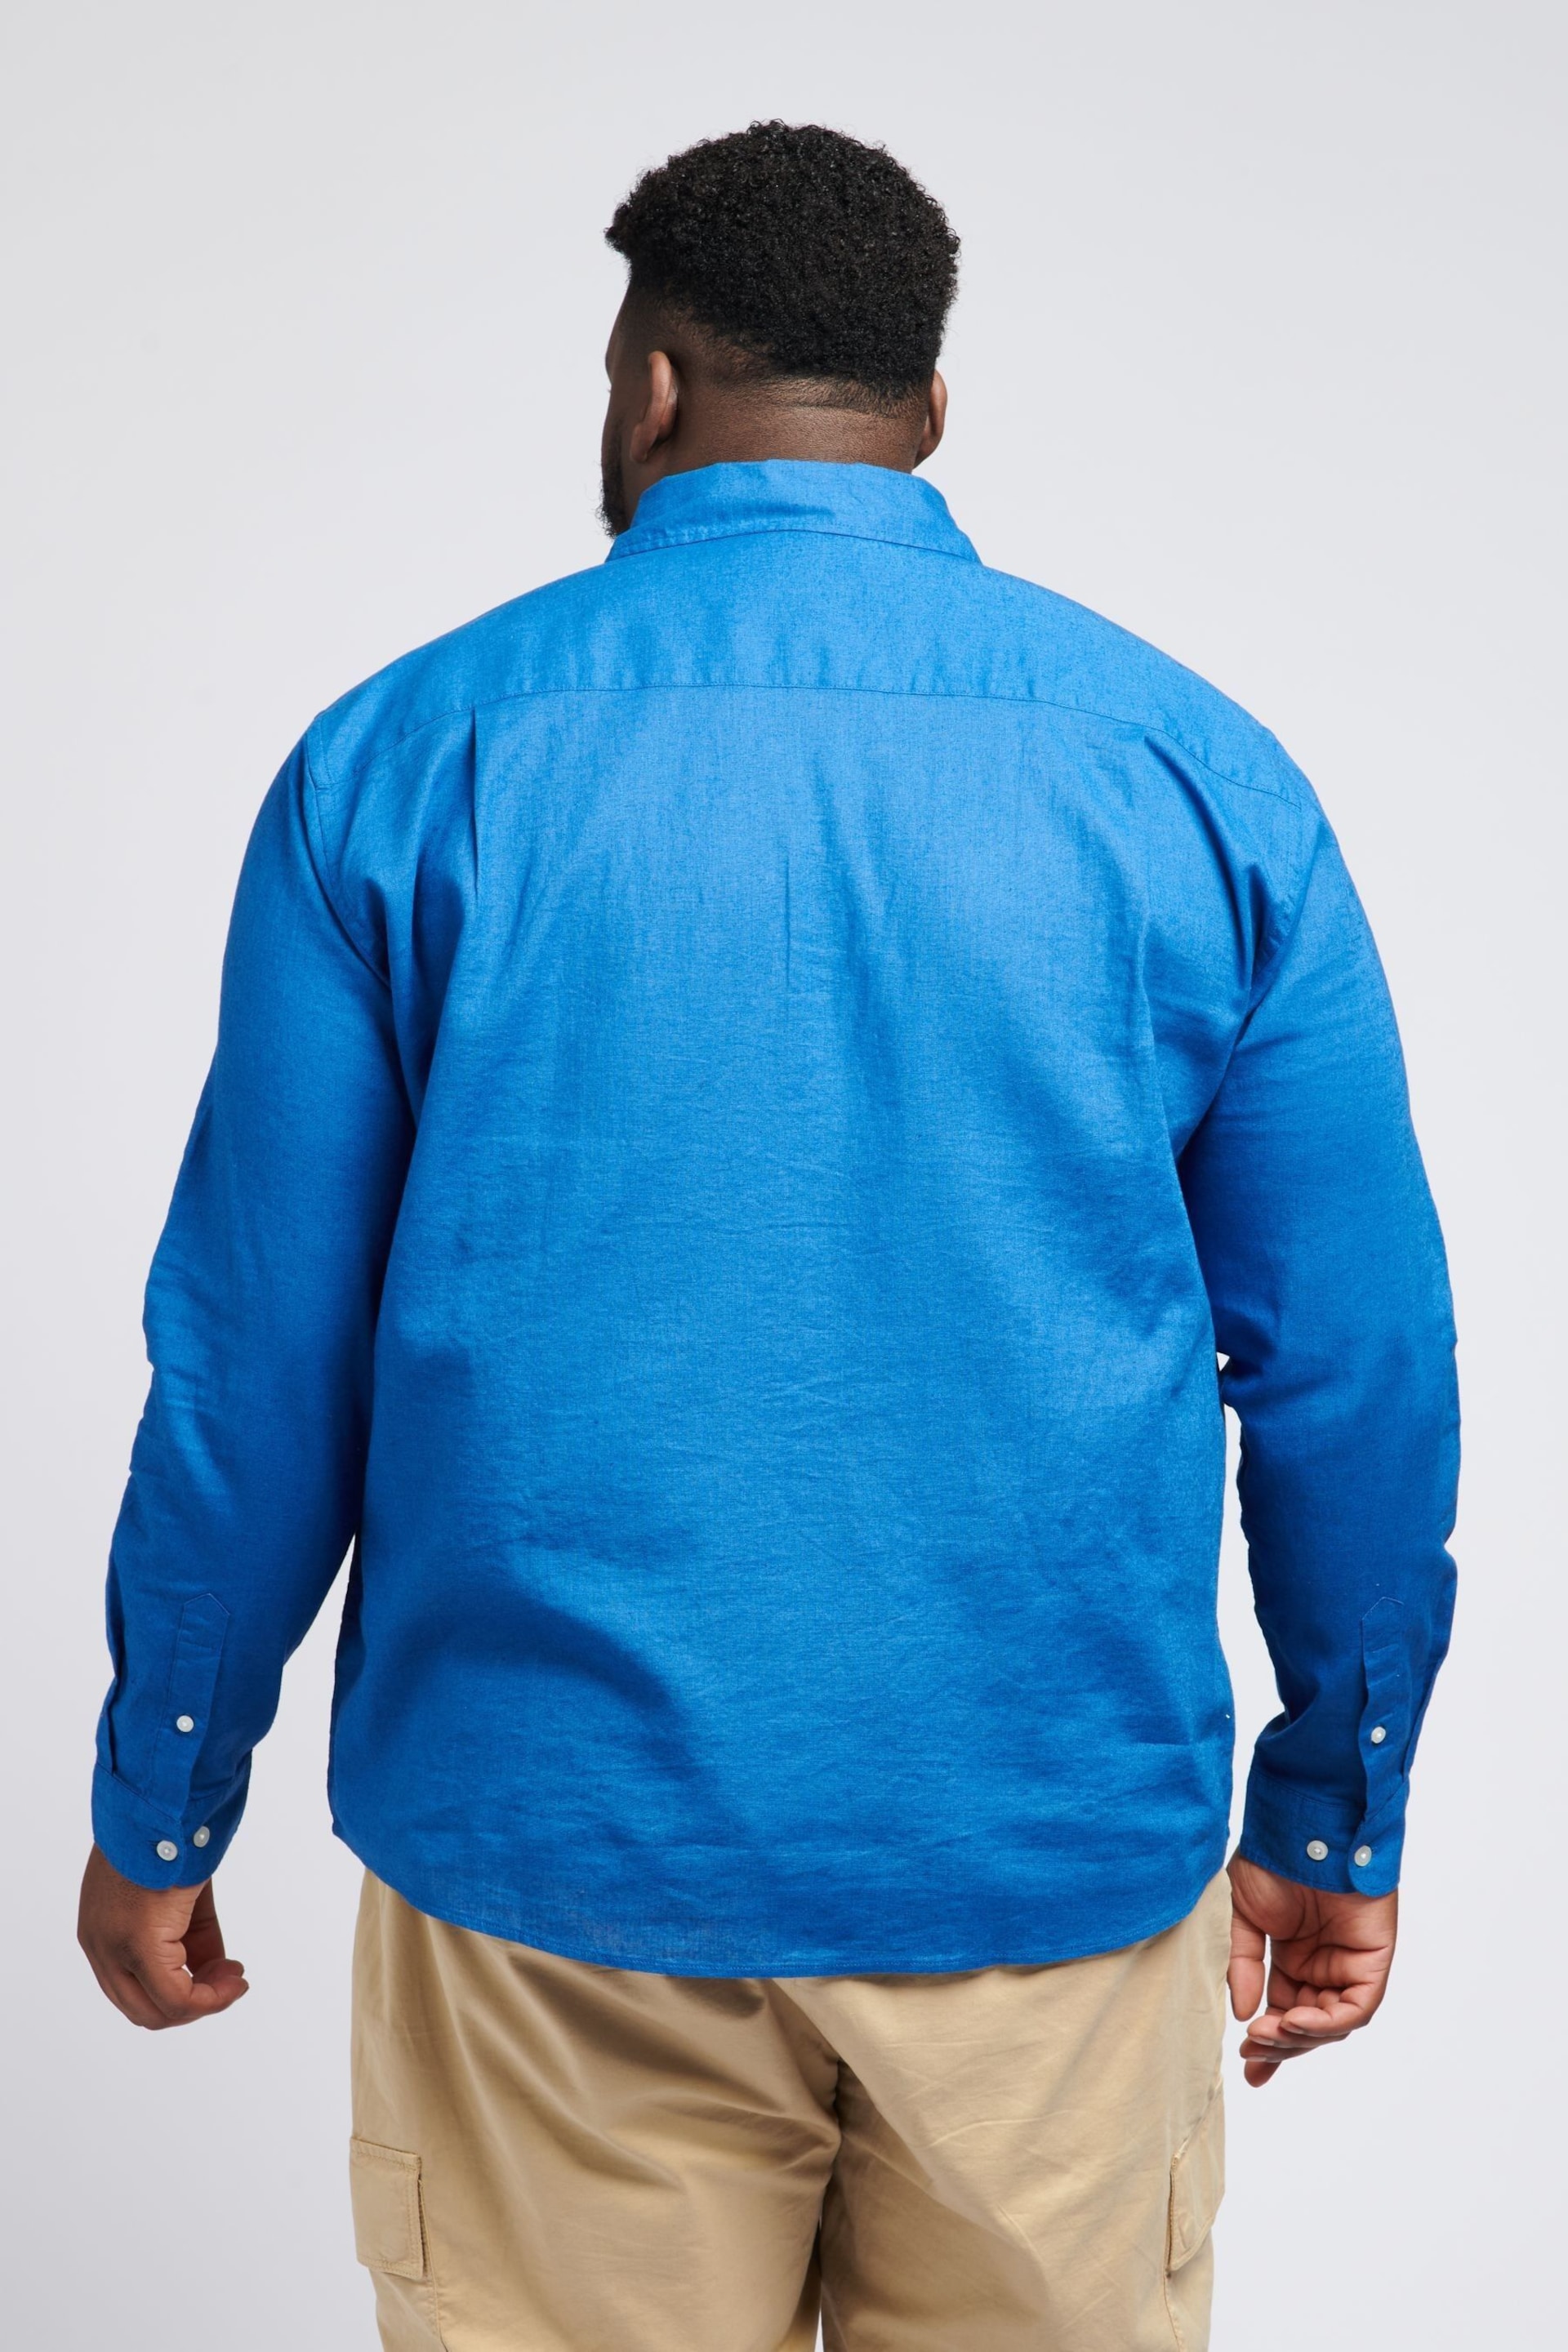 U.S. Polo Assn. Linen Blend Relaxed Long Sleeve Shirt - Image 2 of 4